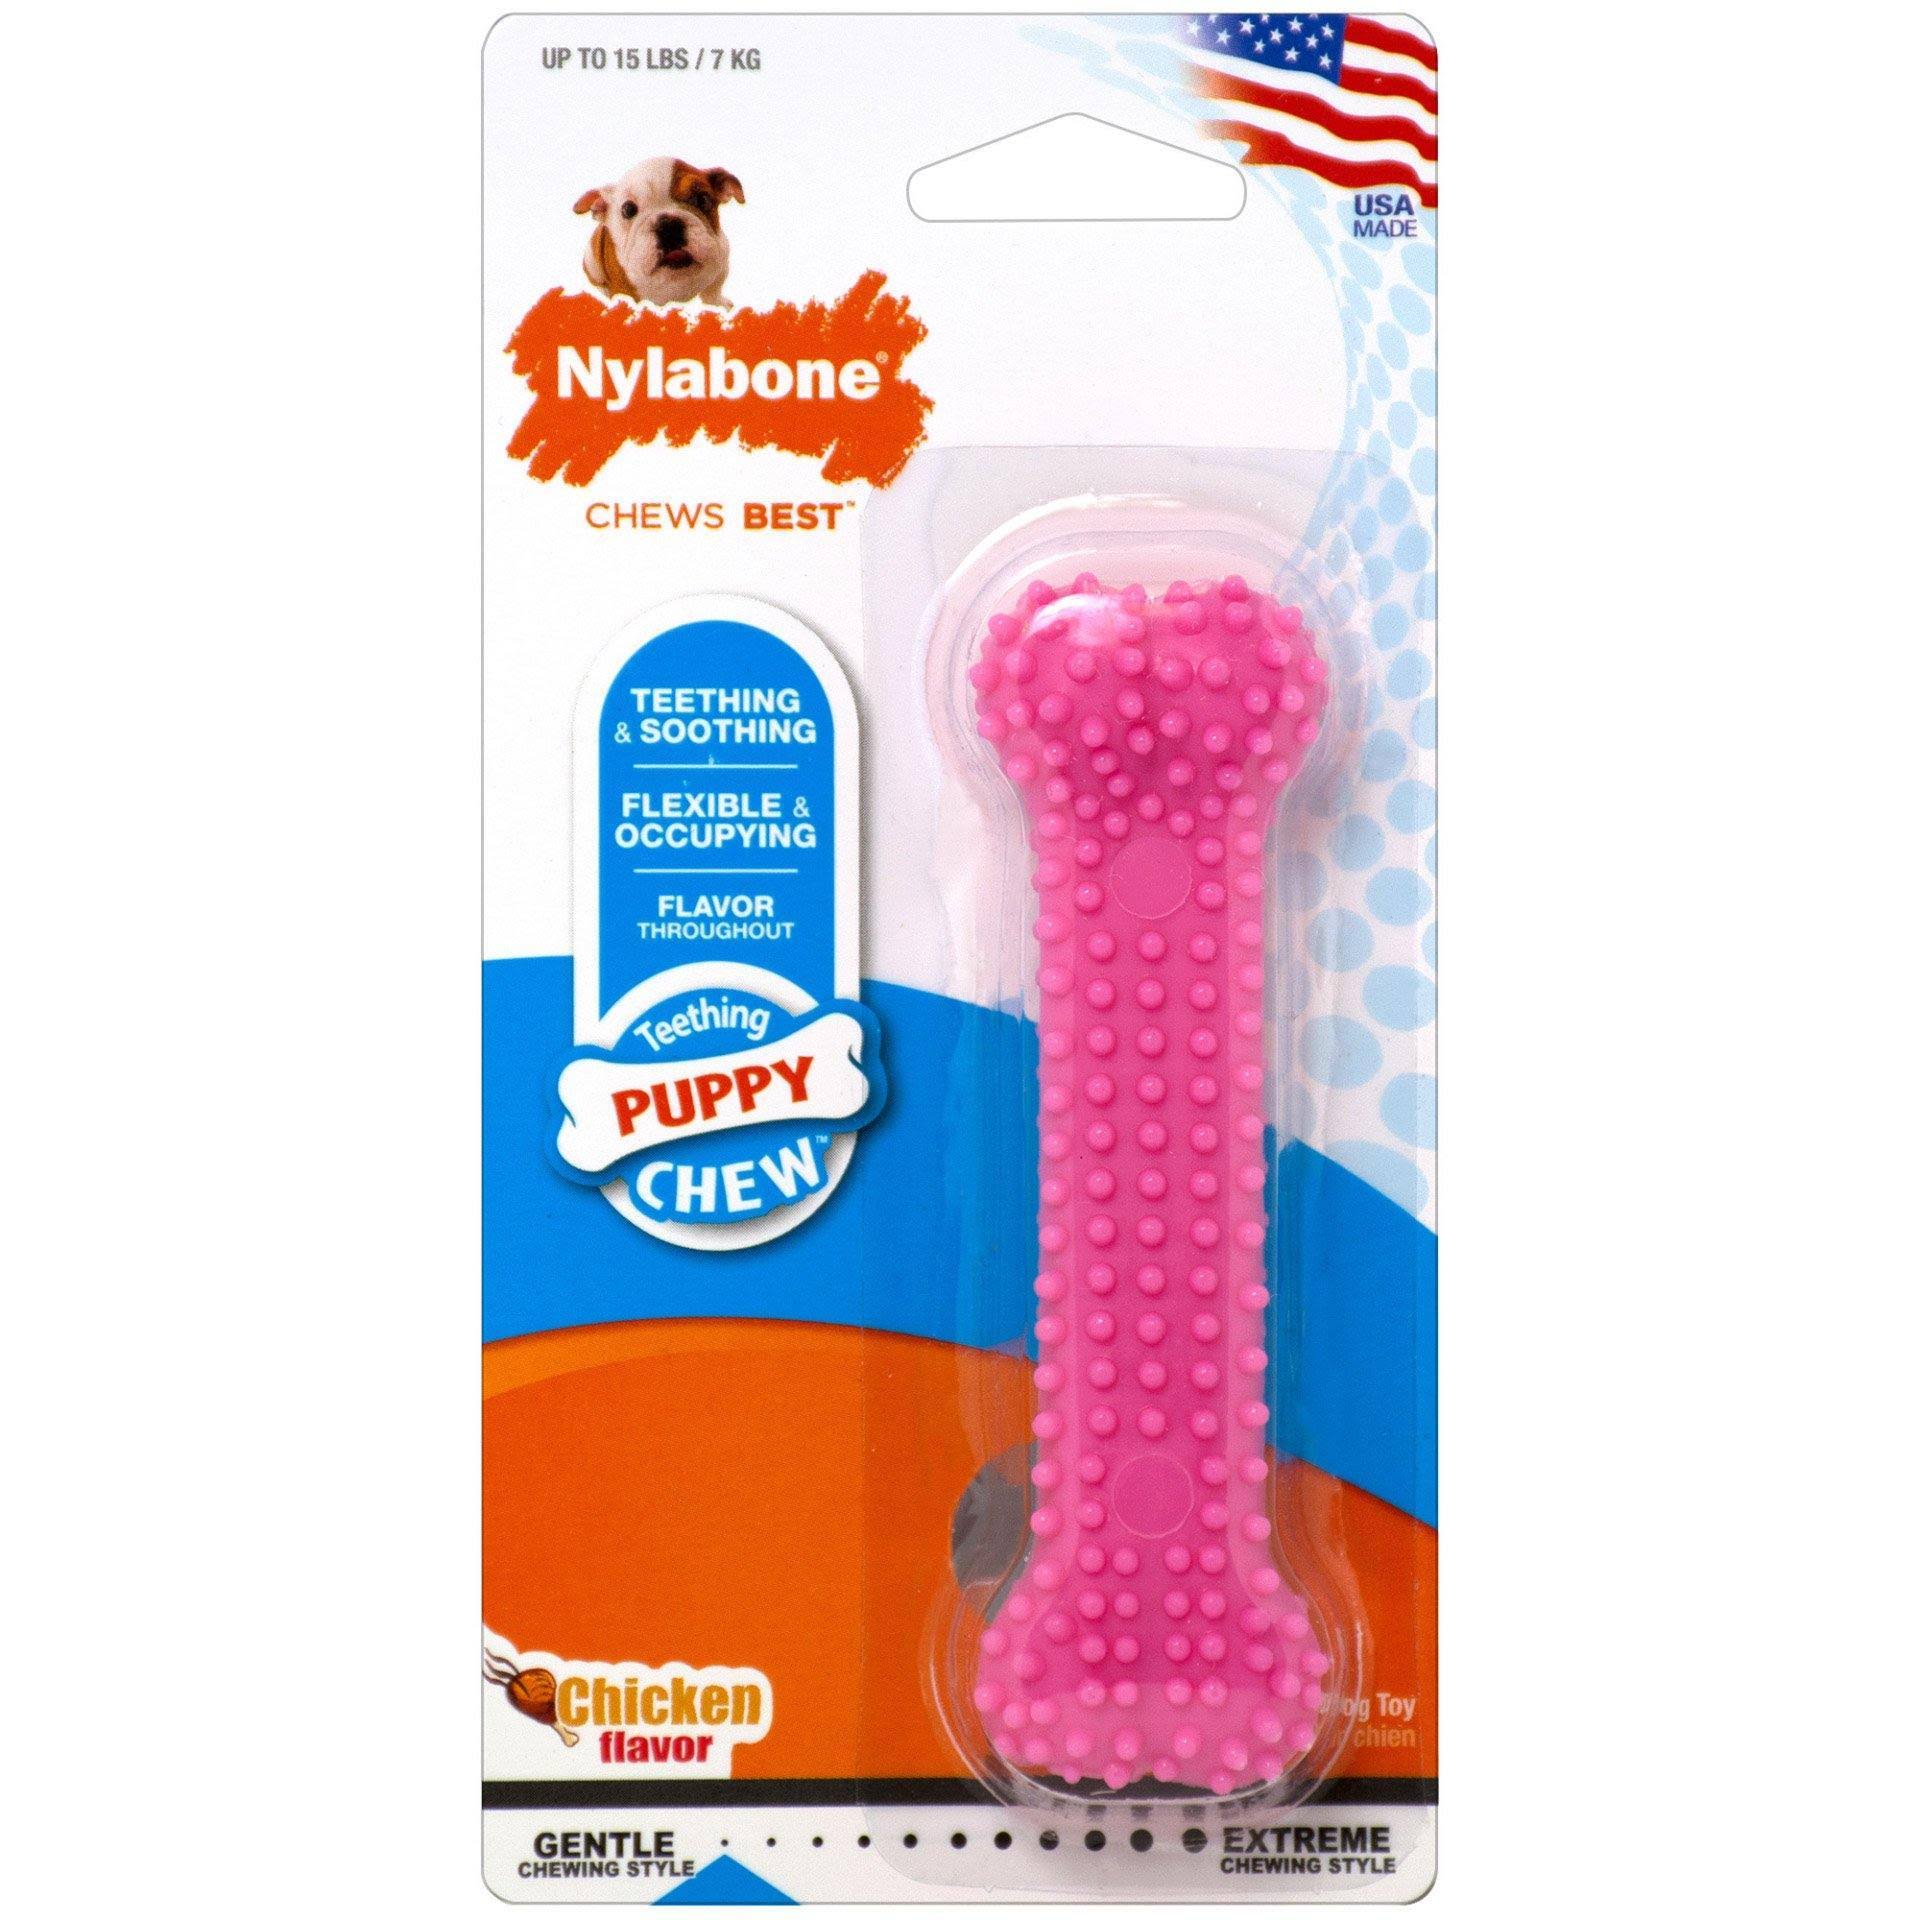 Nylabone Puppy Chew Dental Toy - Pink, Chicken